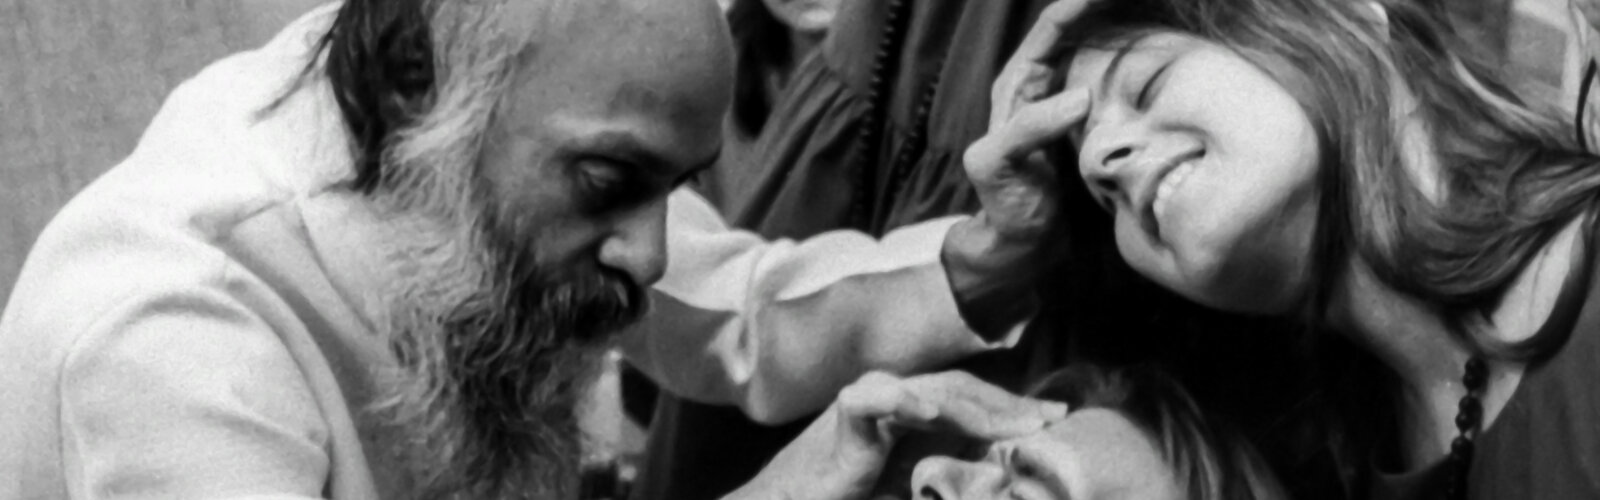 Guru Bhagwan Shree Rajneesh siedelte sich Anfang der 80er Jahre mit seinen Anhänger*innen in den USA an.